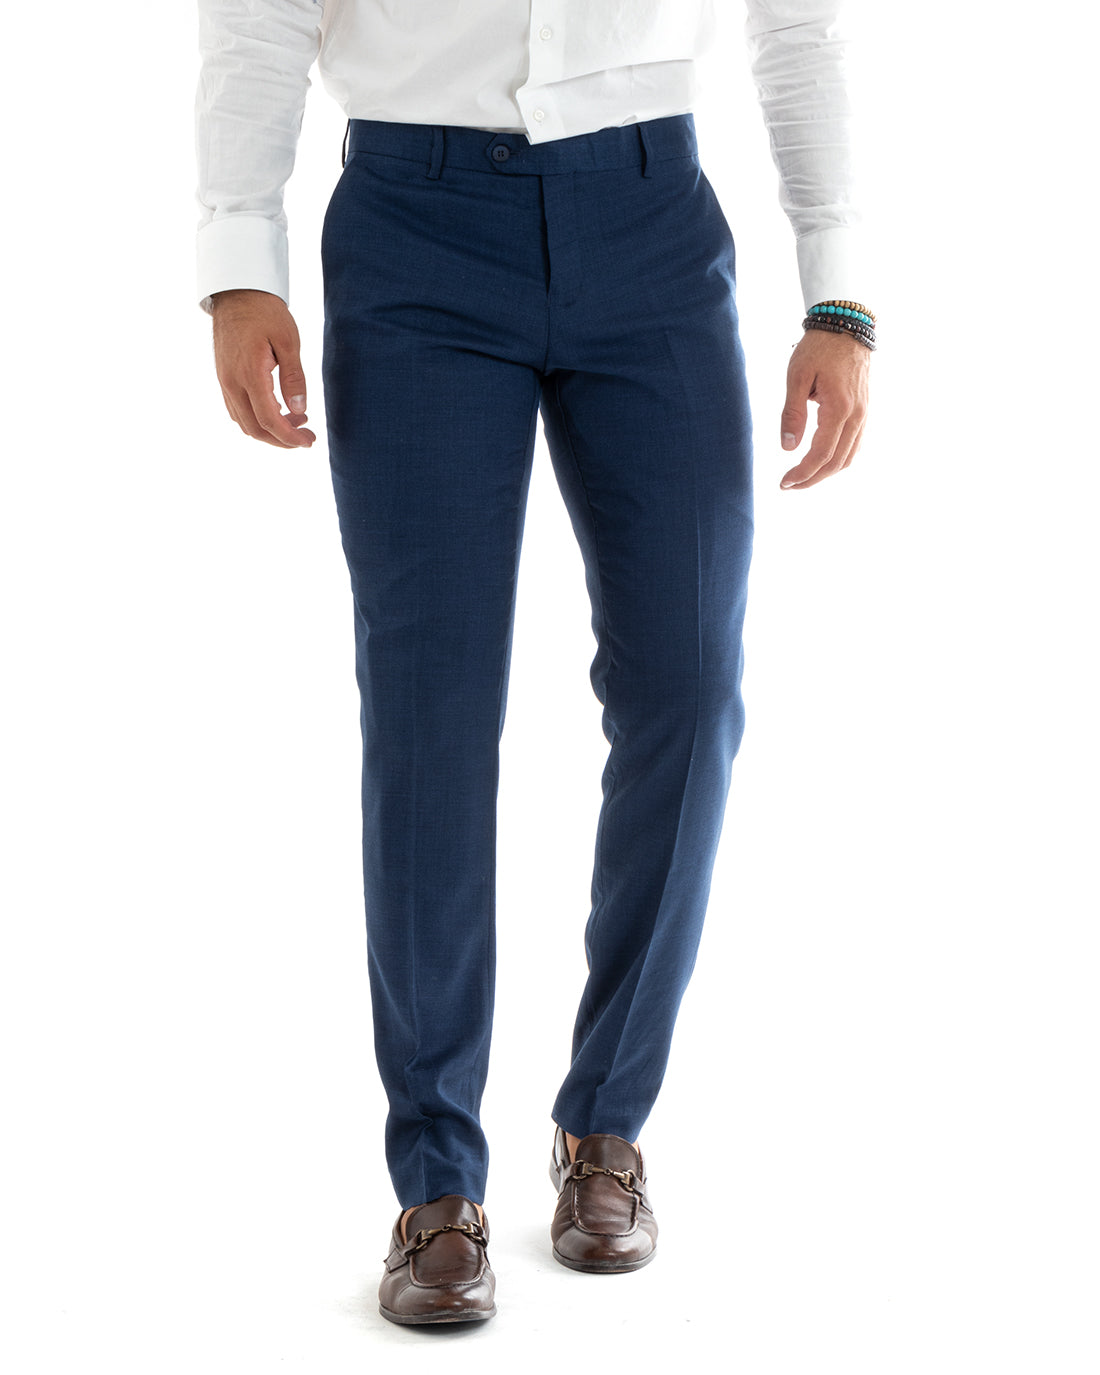 Abito Uomo Monopetto Vestito Completo Giacca Pantaloni Blu Elegante Casual GIOSAL-OU2401A